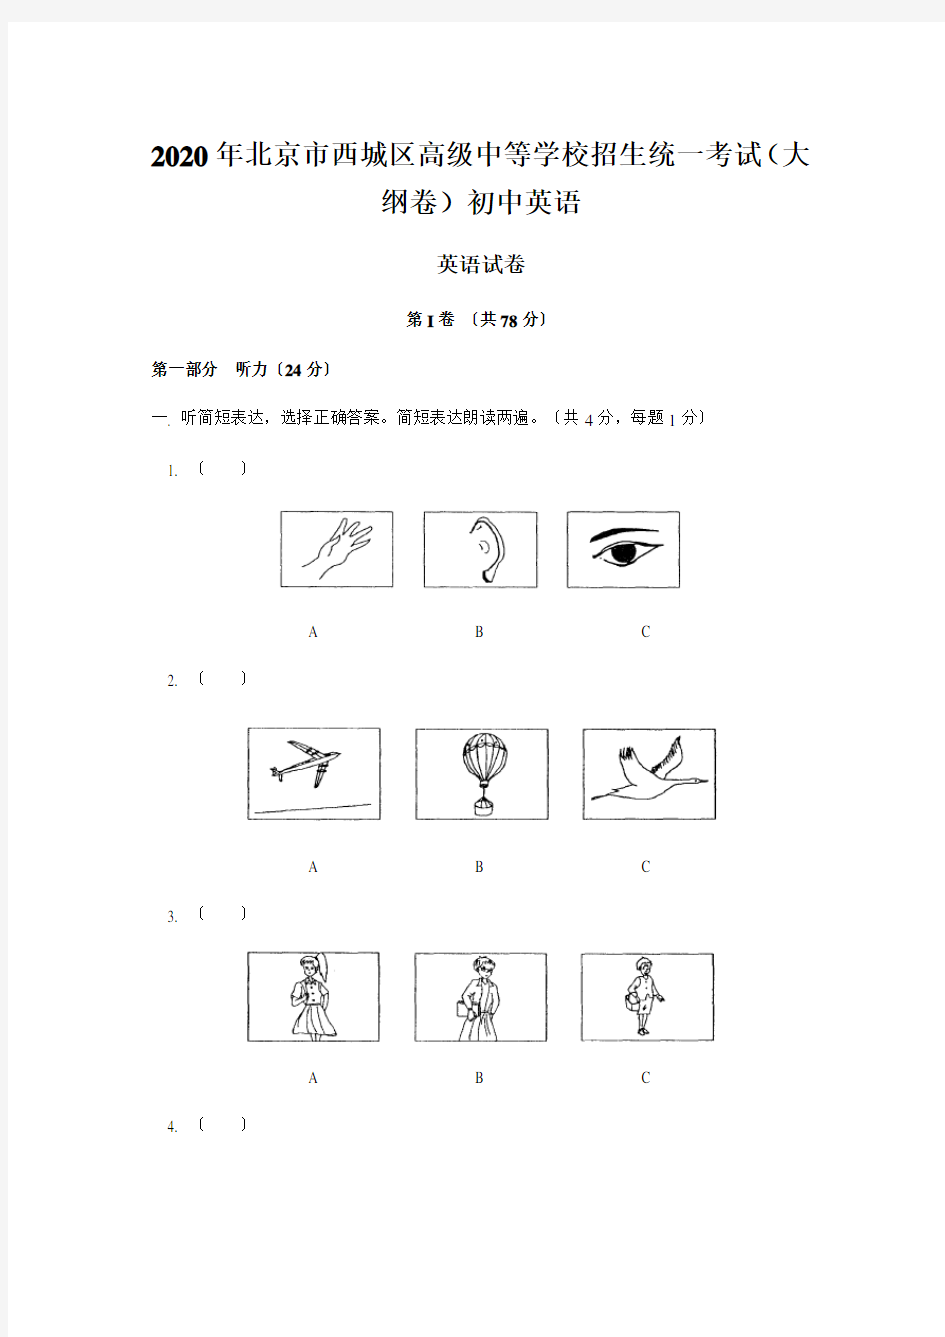 2020年北京市西城区高级中等学校招生统一考试(大纲卷)初中英语